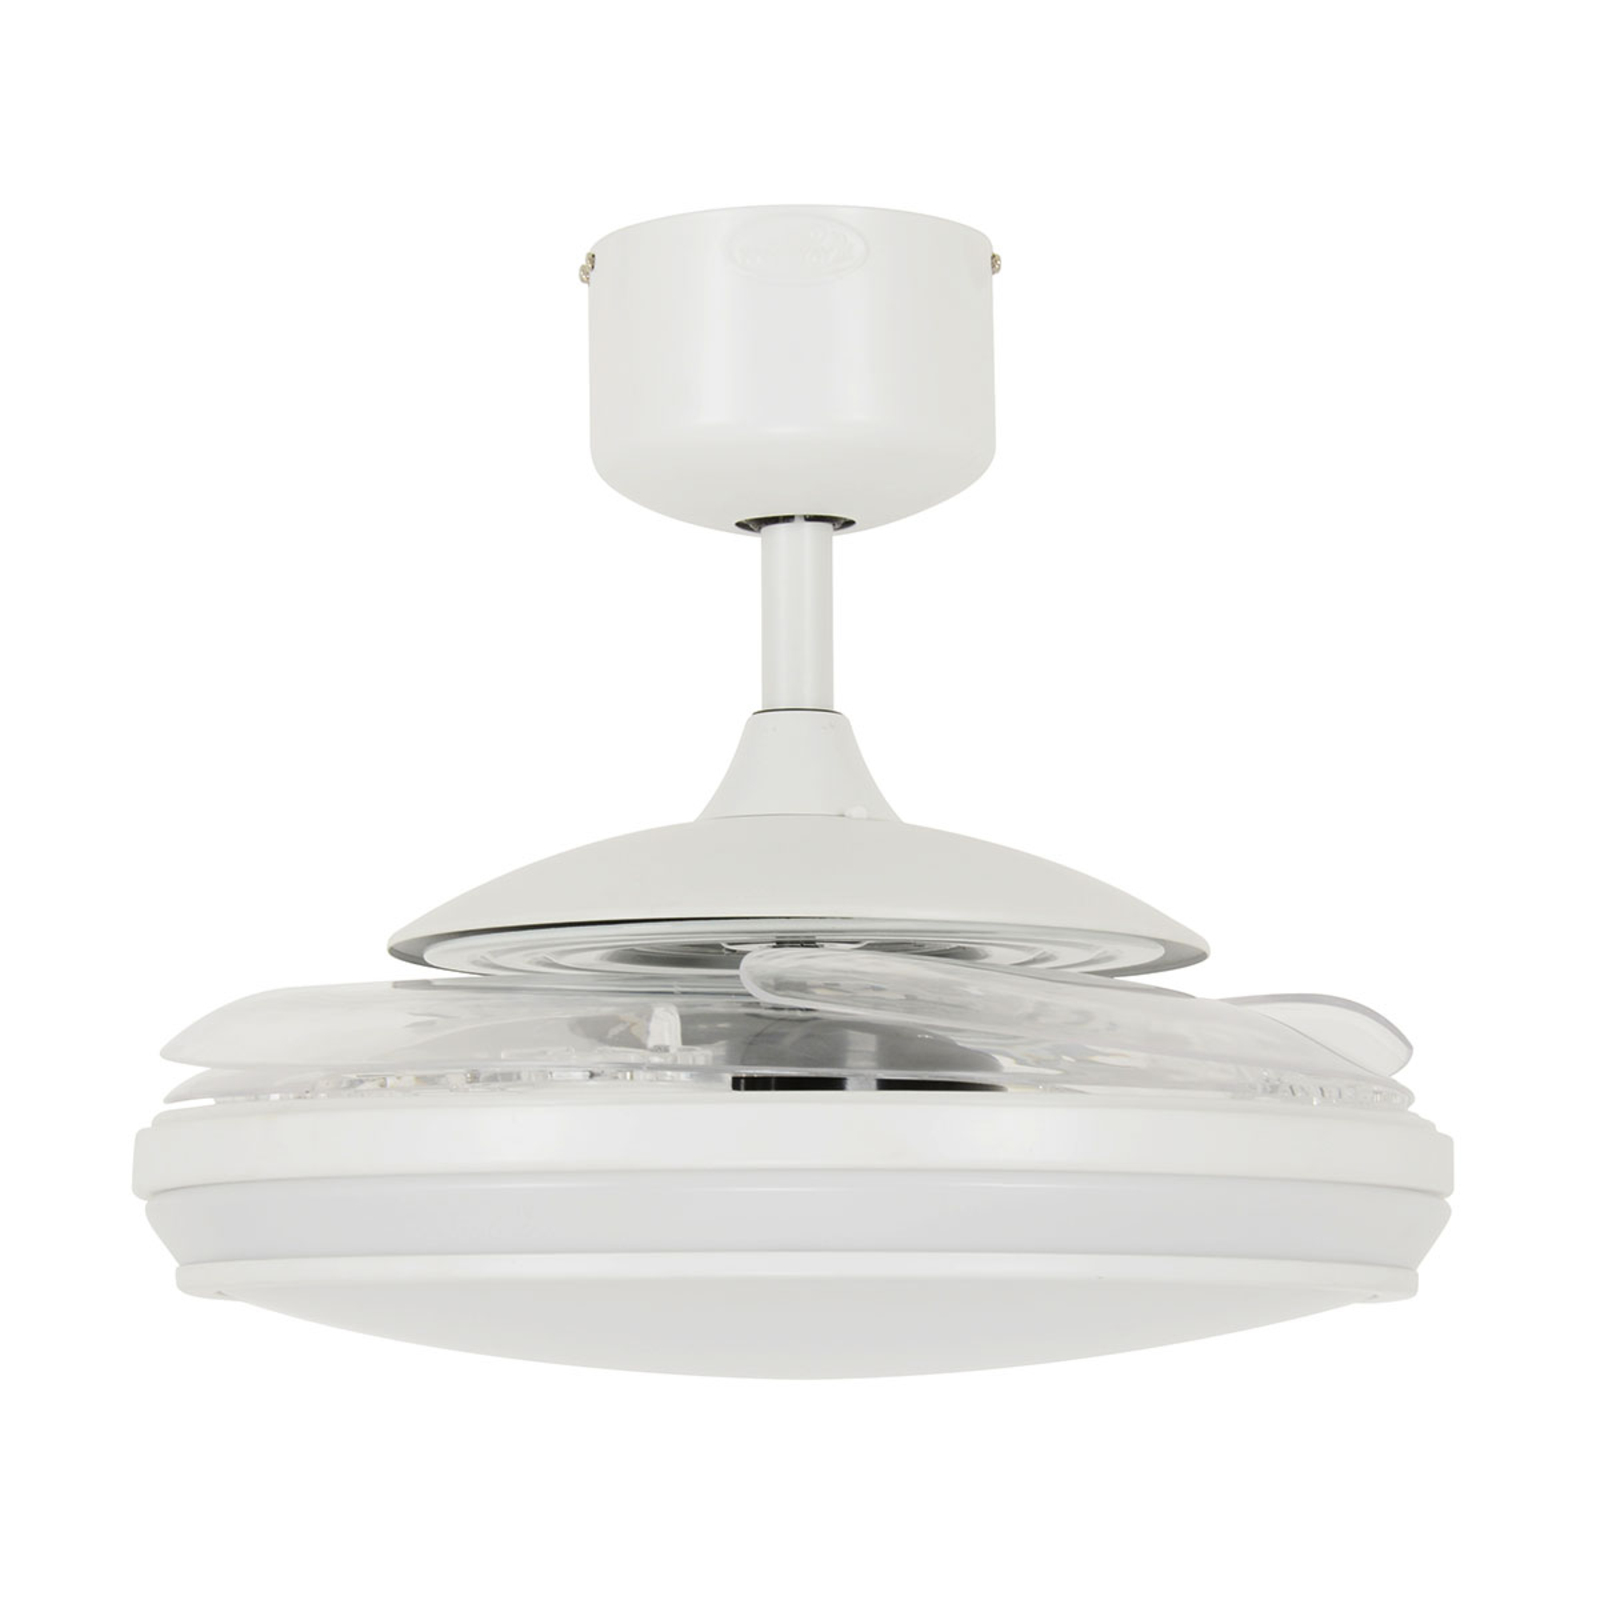 Beacon LED-es mennyezeti ventilátor Fanaway Evo 1 fehér 121 cm csendes